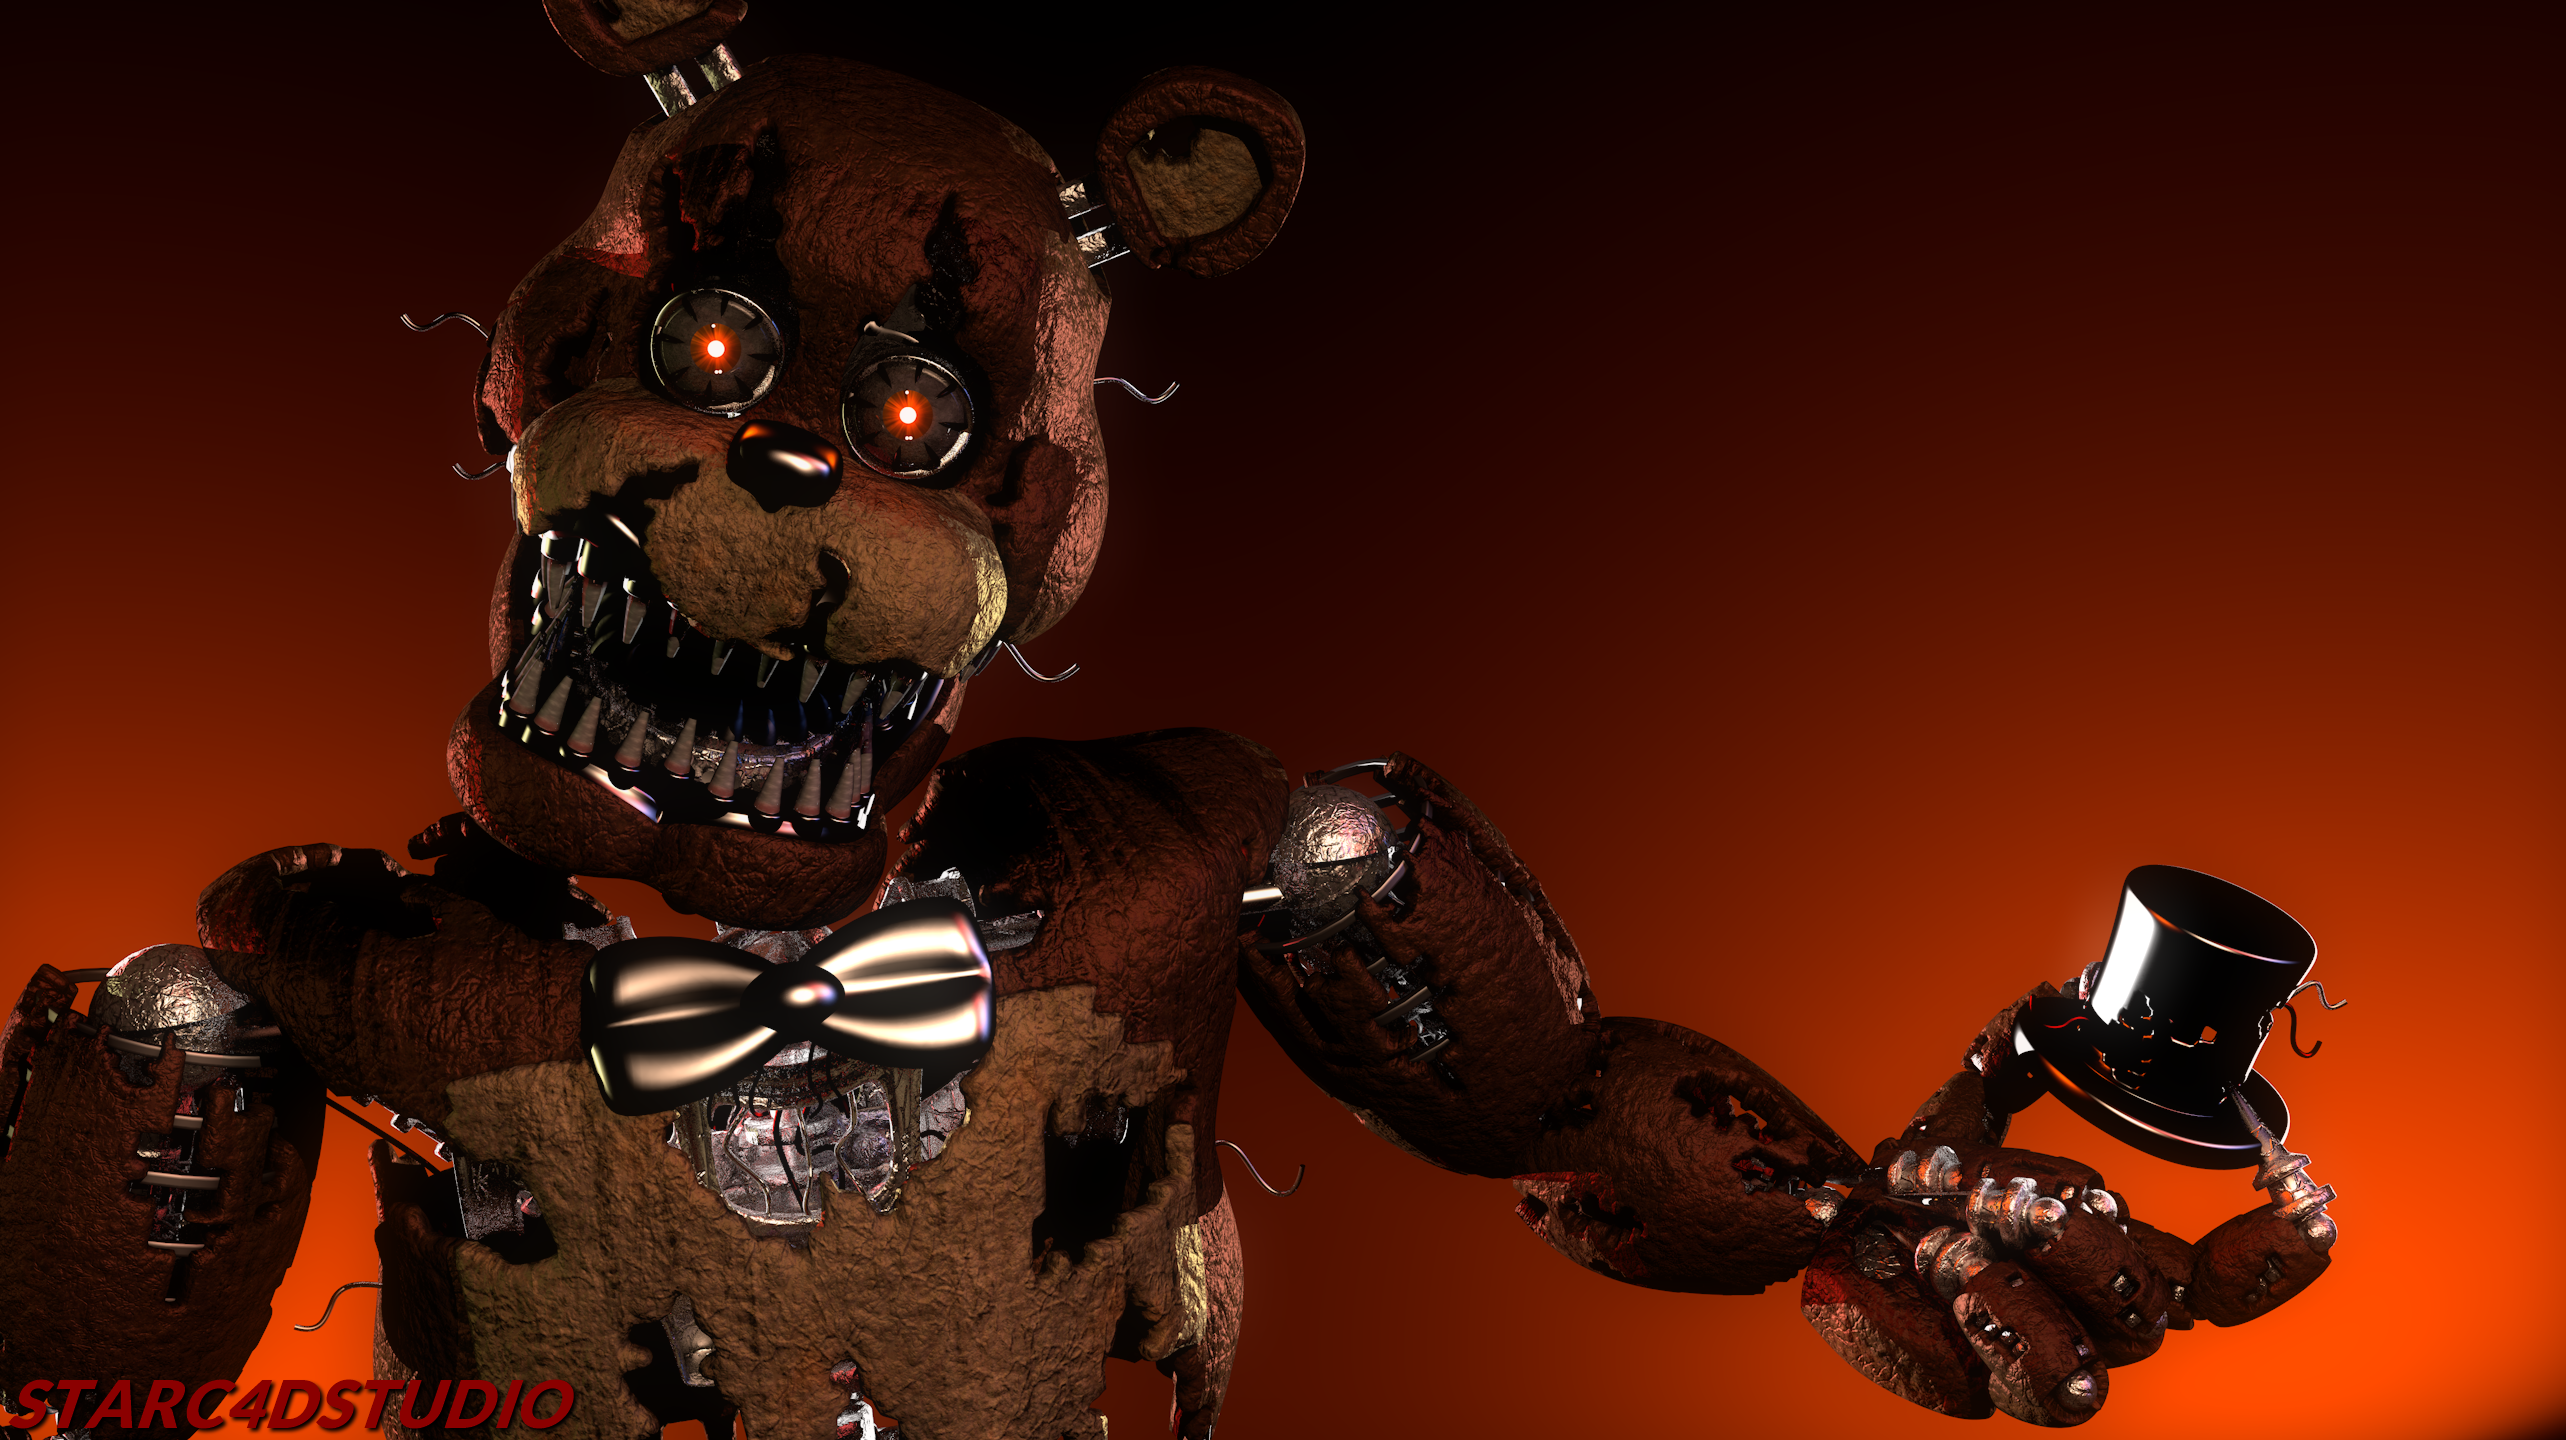 Nightmare Freddy 2.0 in FNaF4!! by HeroGollum on DeviantArt